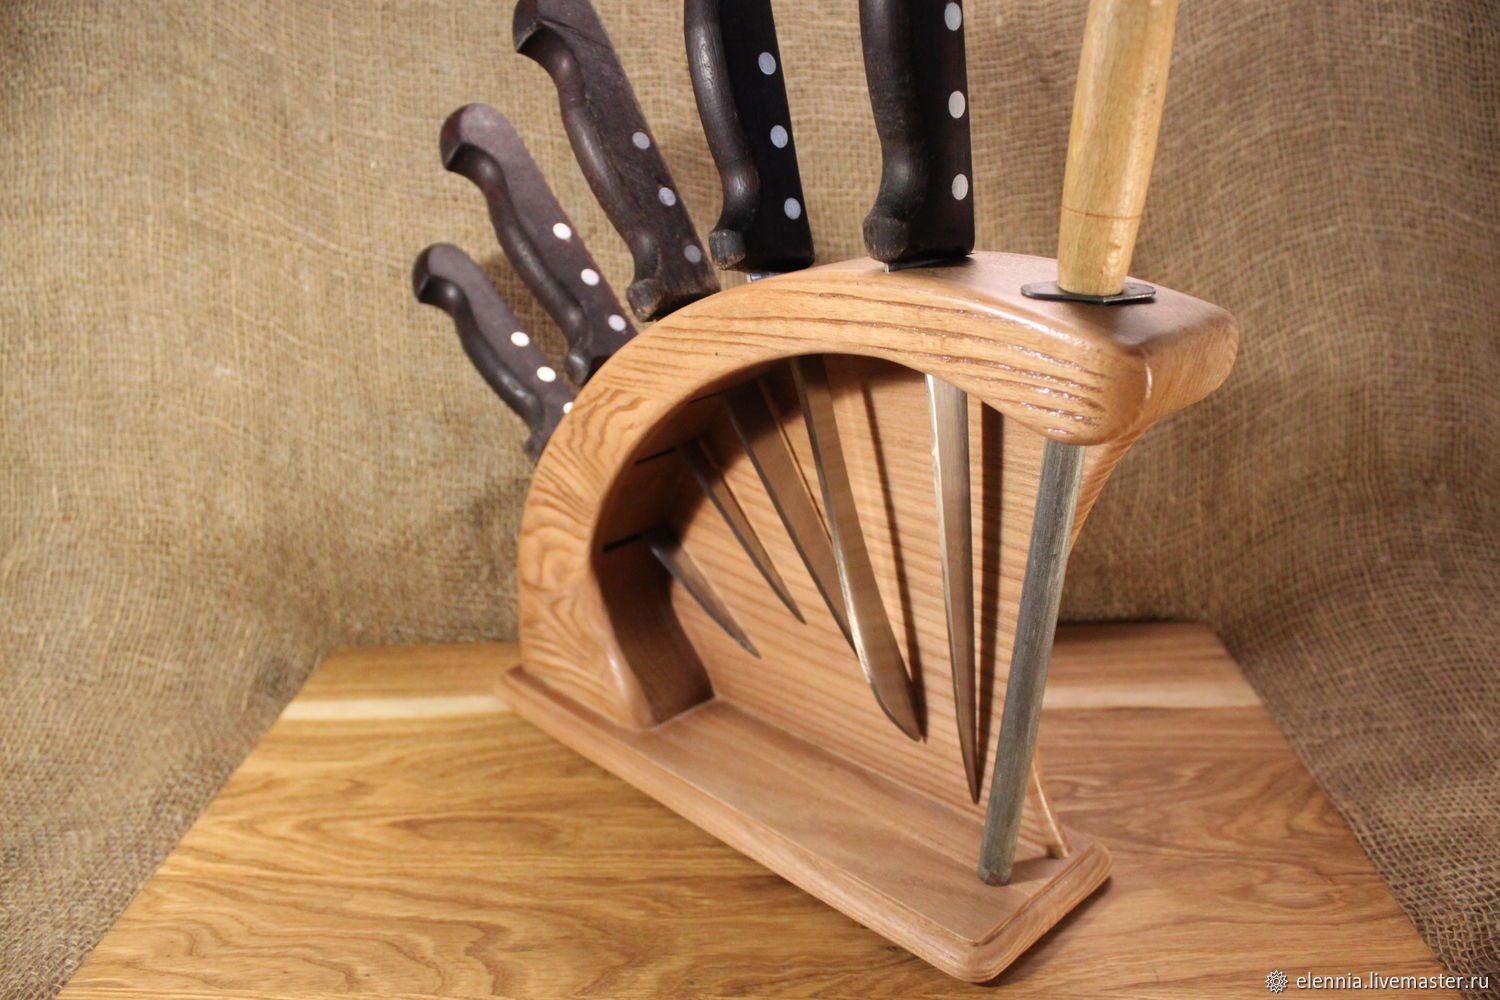 Деревянные кухонные ножи. Подставка для ножей Zollinger. Подставка для ножей из дерева. Необычные деревянные изделия. Оригинальные изделия из дерева для кухни.